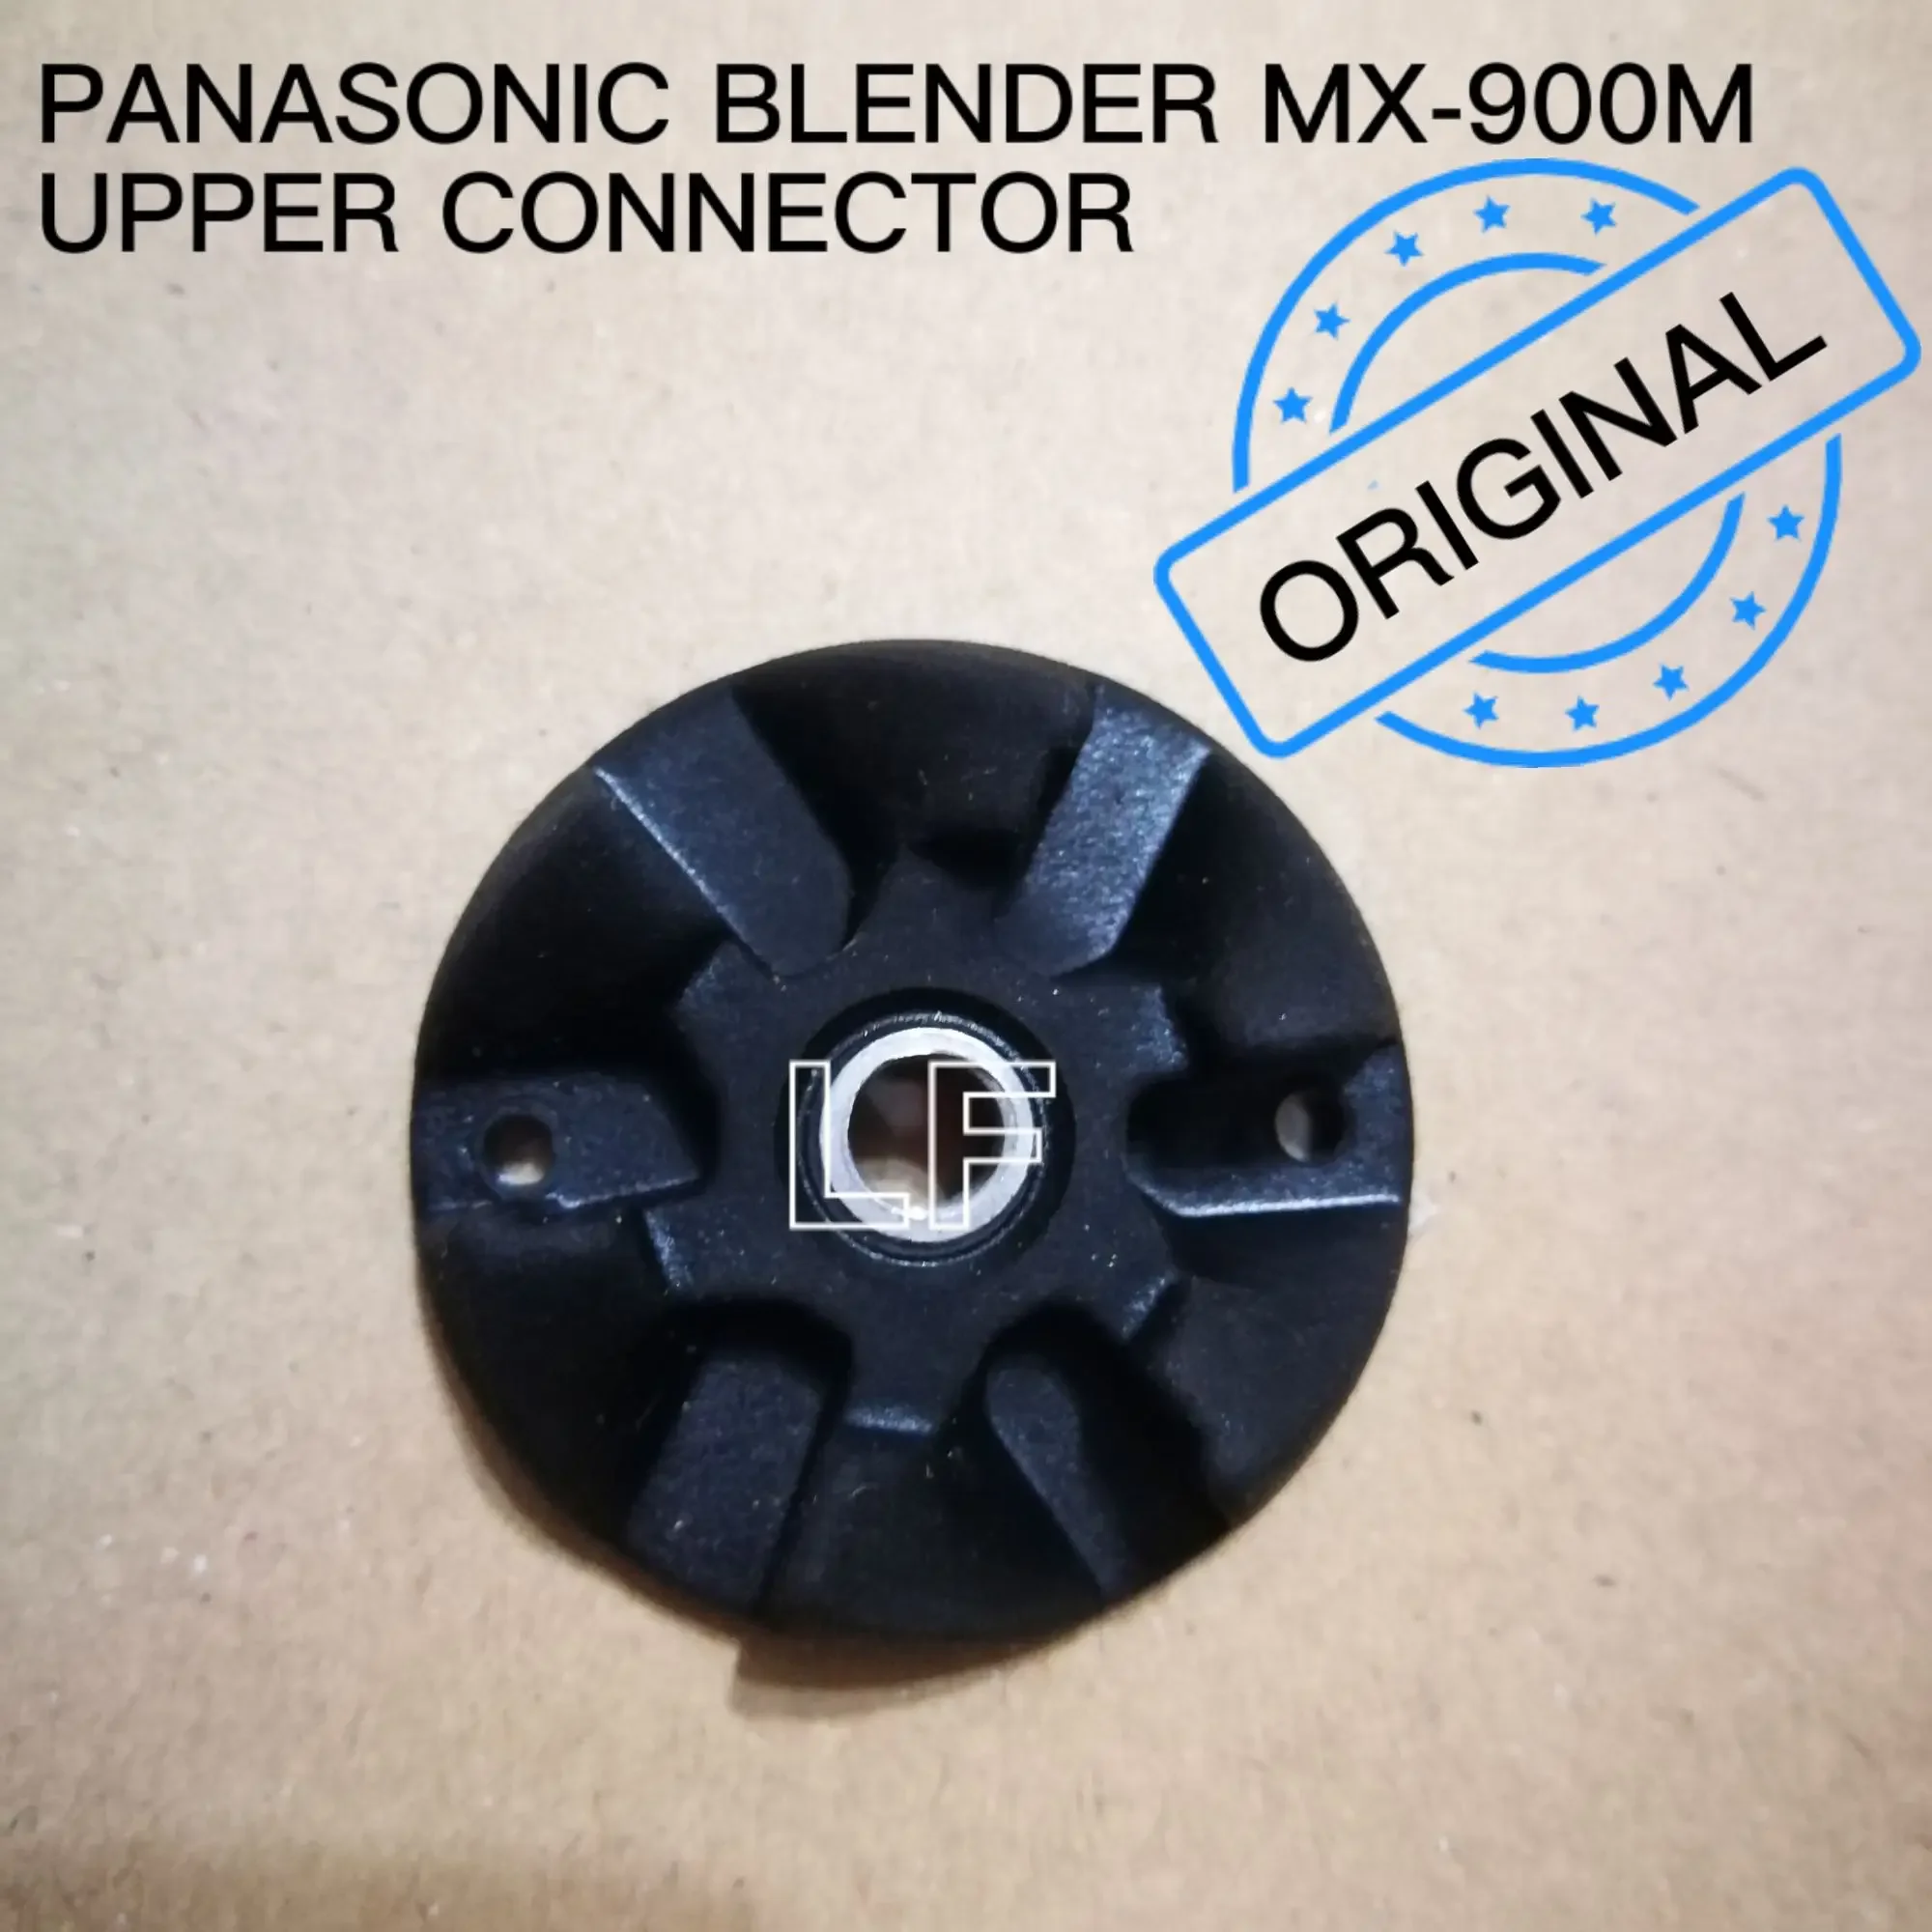 PANASONIC BLENDER JUG CONNECTOR UPPER FOR BLENDER / JUICER *ORIGINAL* MX-900M